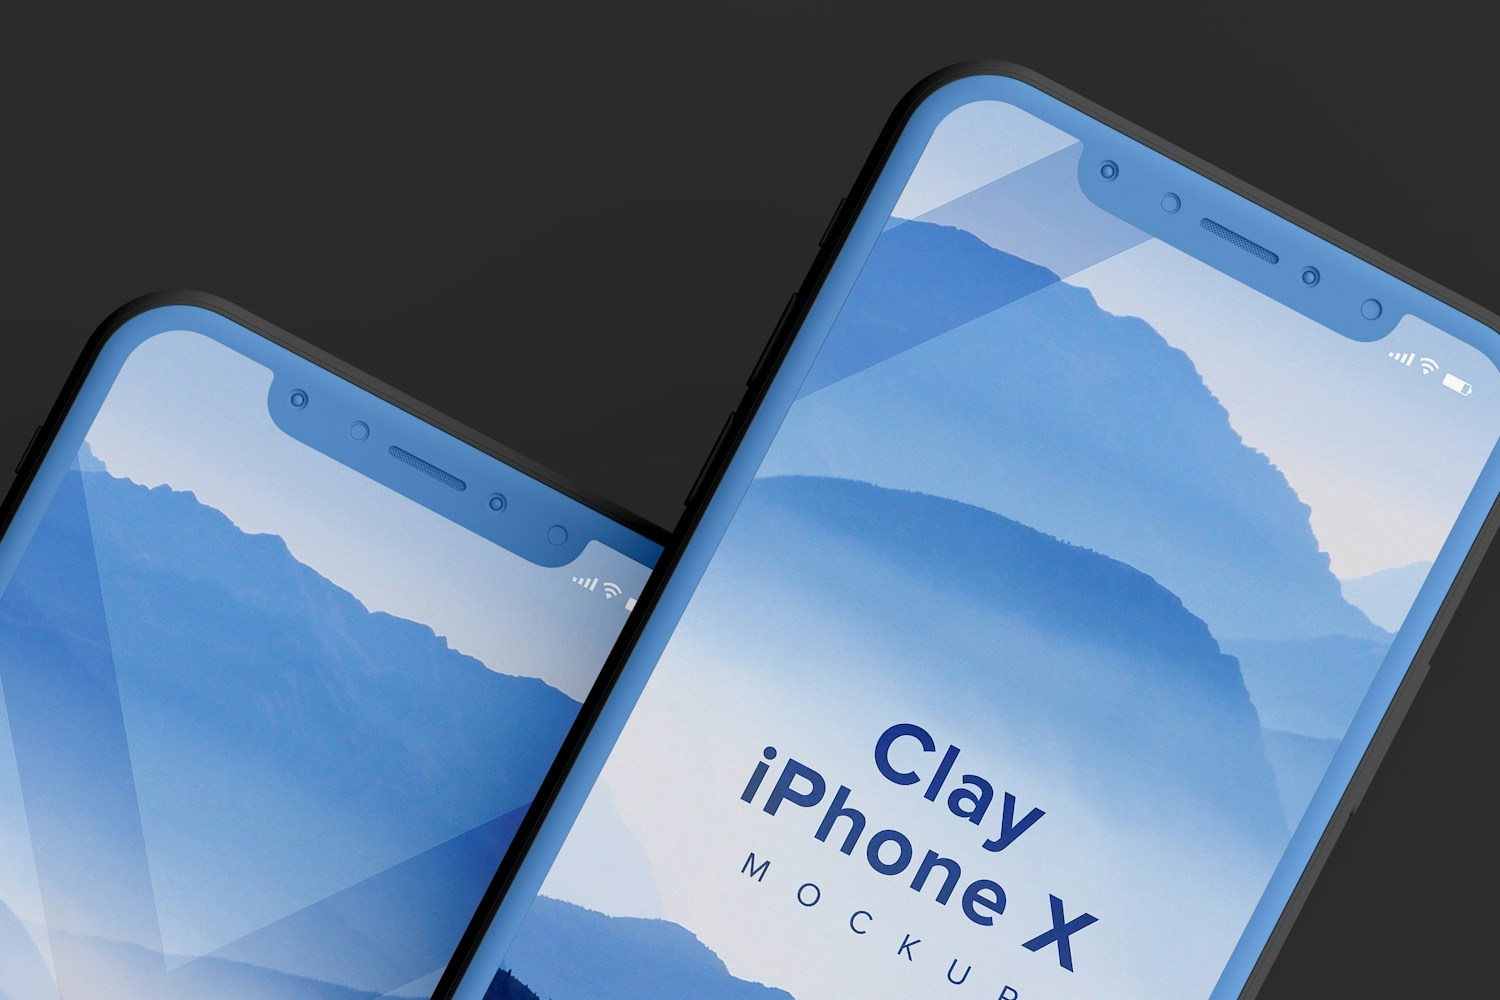 Clay iPhone X Mockup 04